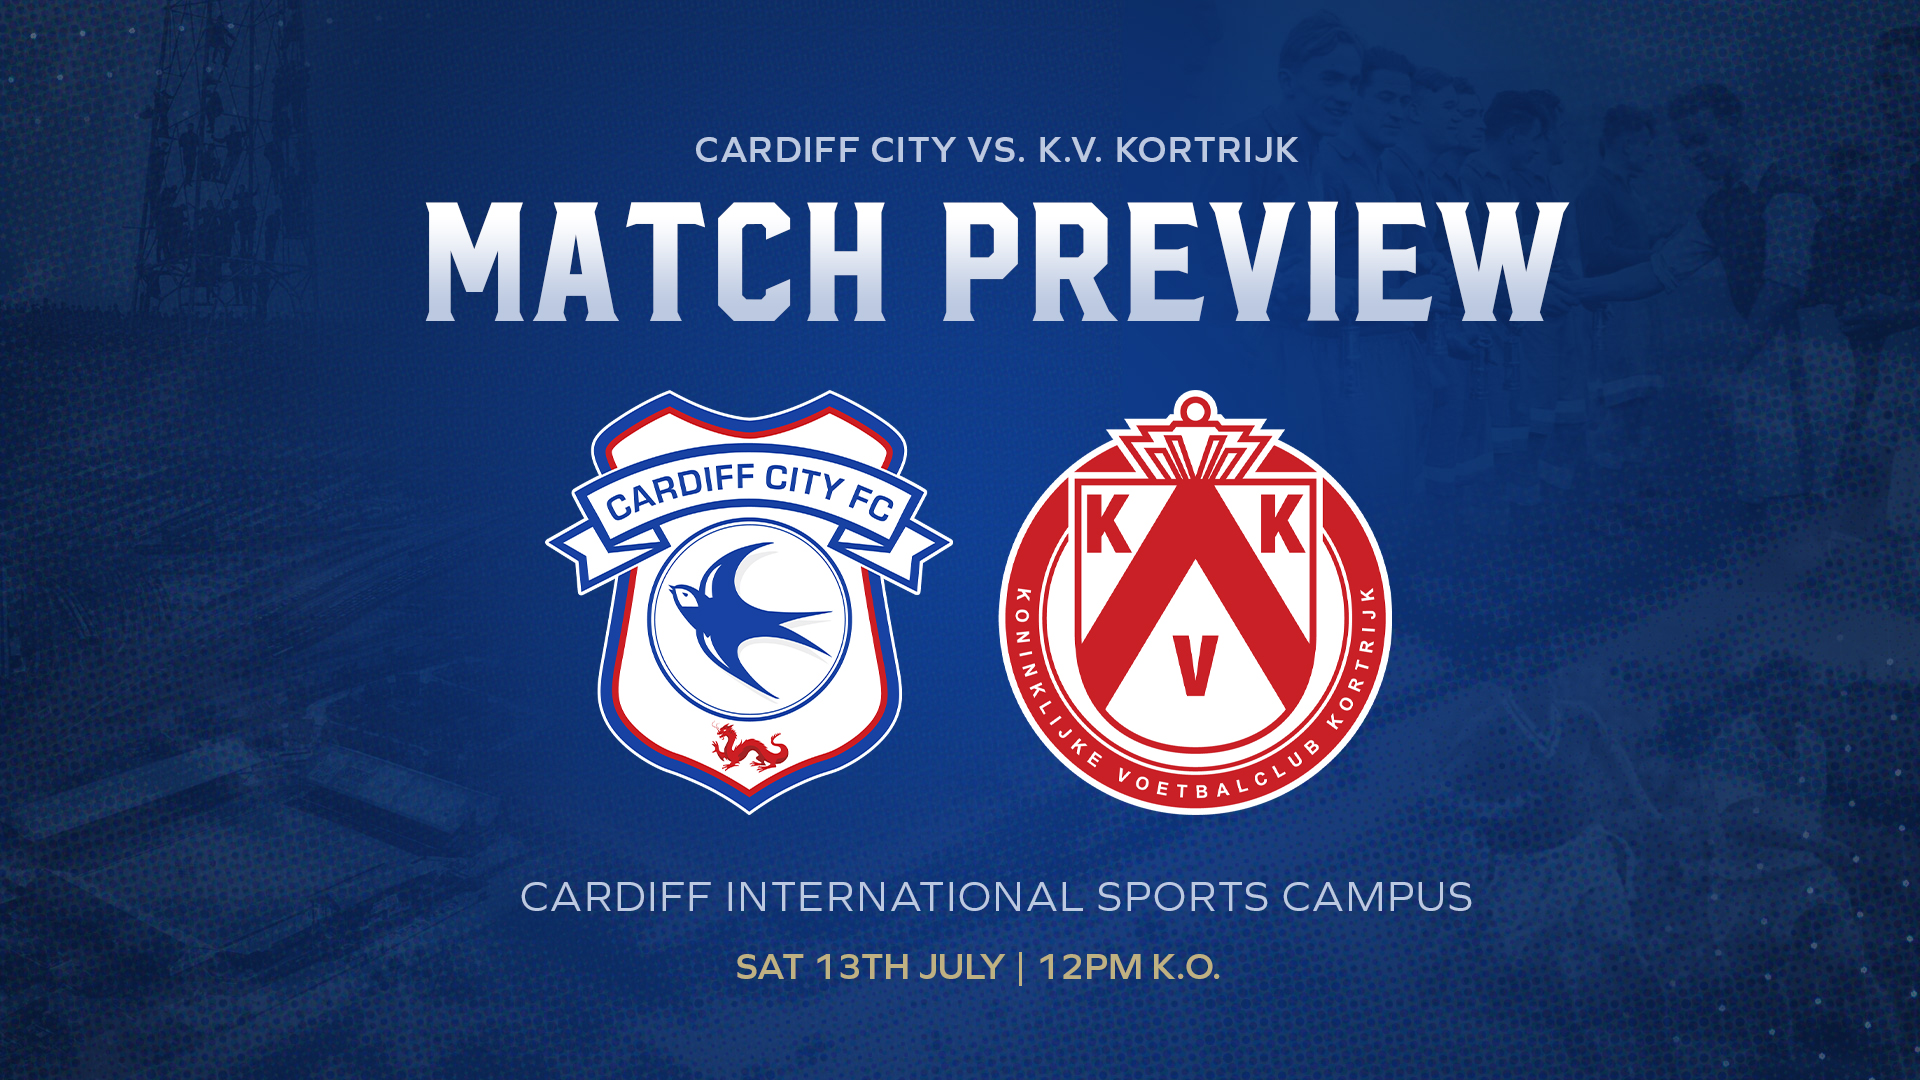 Match Preview | Cardiff City vs. K.V Kortrijk